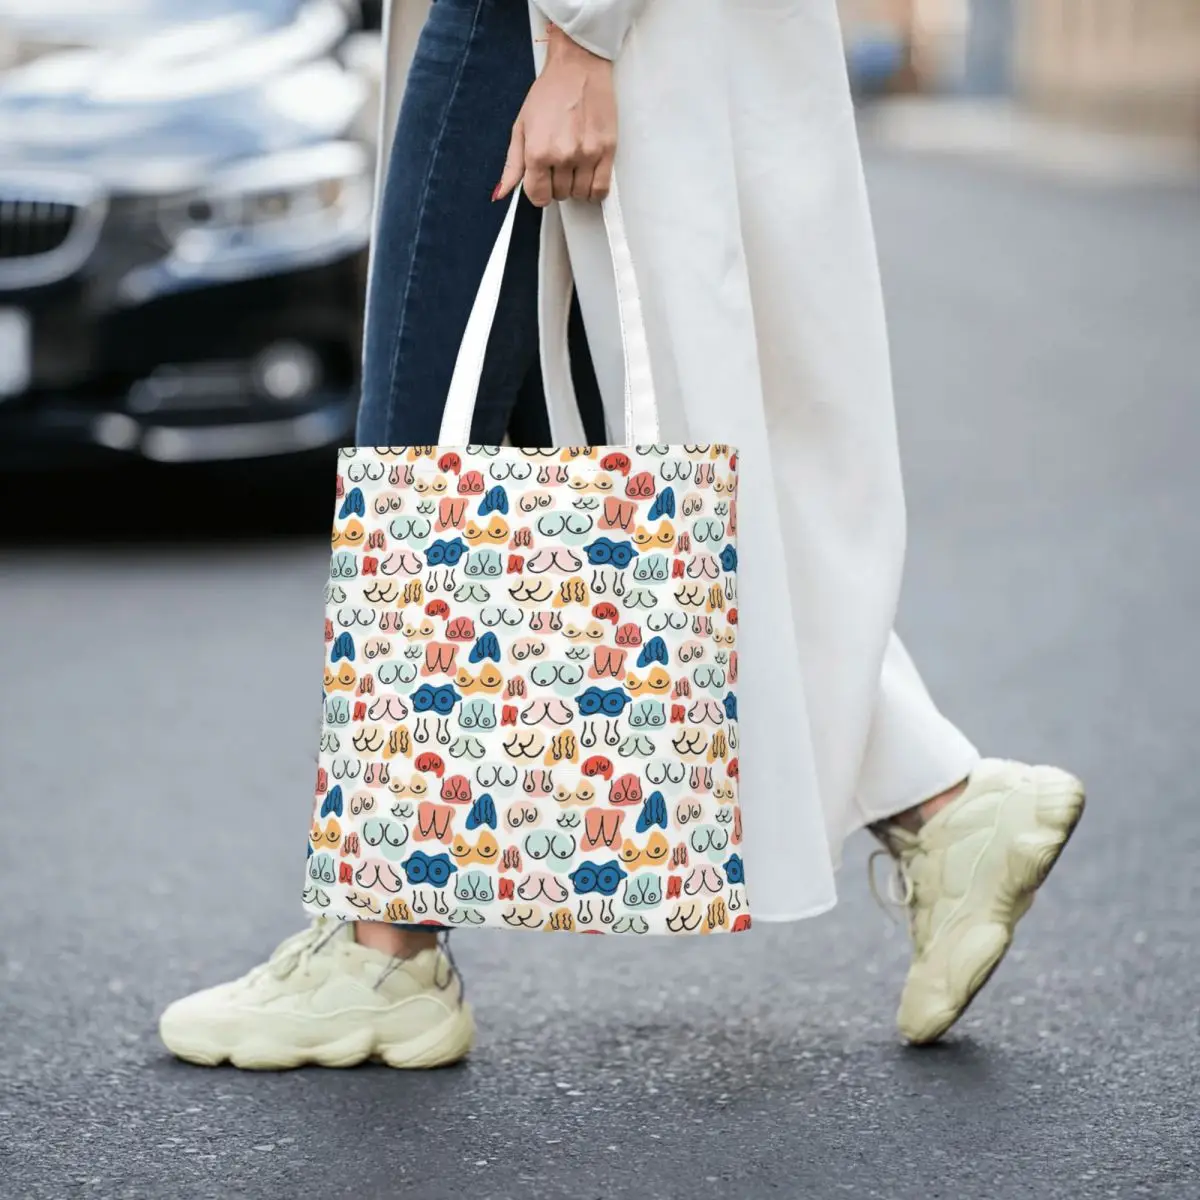 Boobs Totes Canvas Handbag Women Canvas Shopping Bag